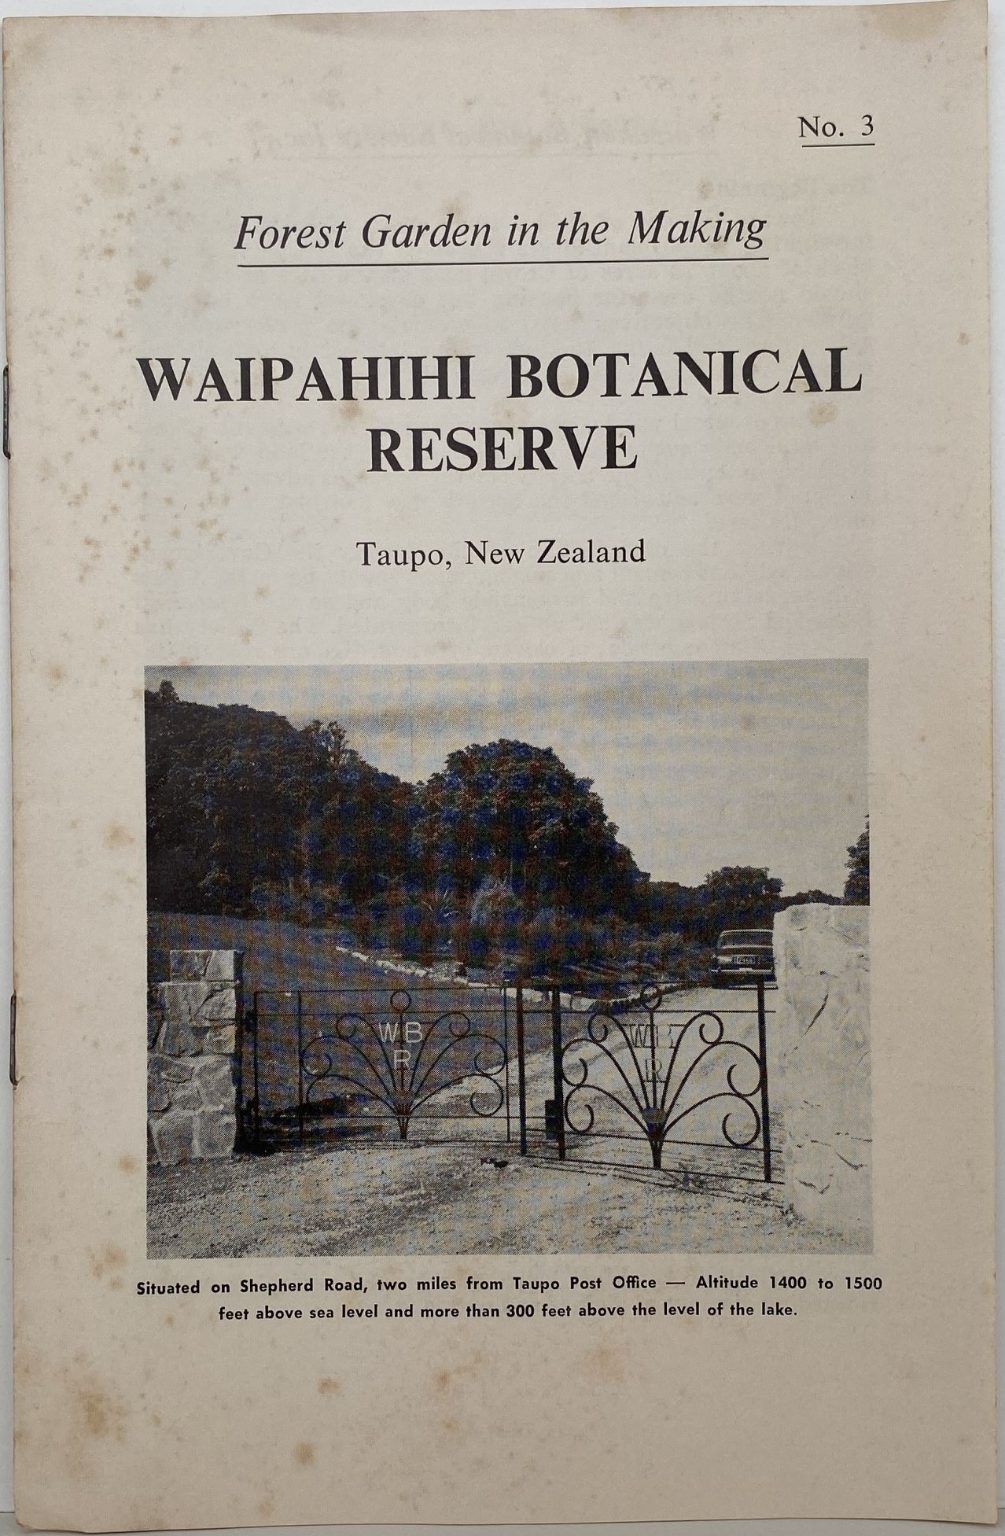 WAIPHIHI BOTANICAL RESERVE: Taupo, New Zealand